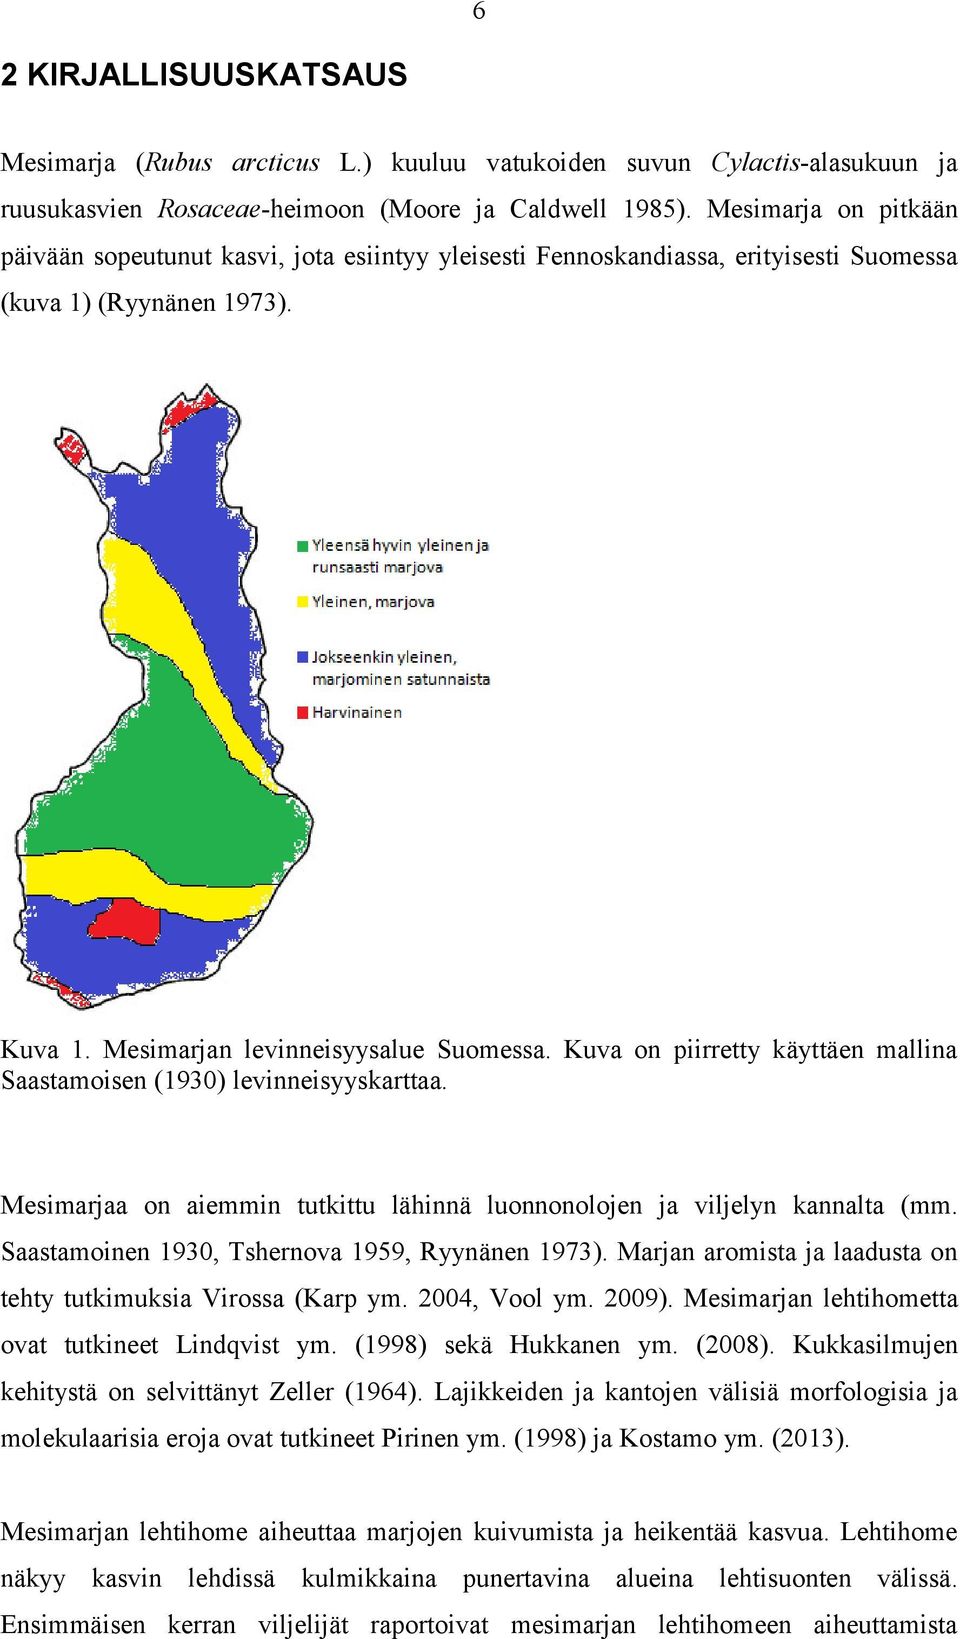 Kuv on piirretty käyttäen mllin Sstmoisen (1930) levinneisyyskrtt. Mesimrj on iemmin tutkittu lähinnä luonnonolojen j viljelyn knnlt (mm. Sstmoinen 1930, Tshernov 1959, Ryynänen 1973).